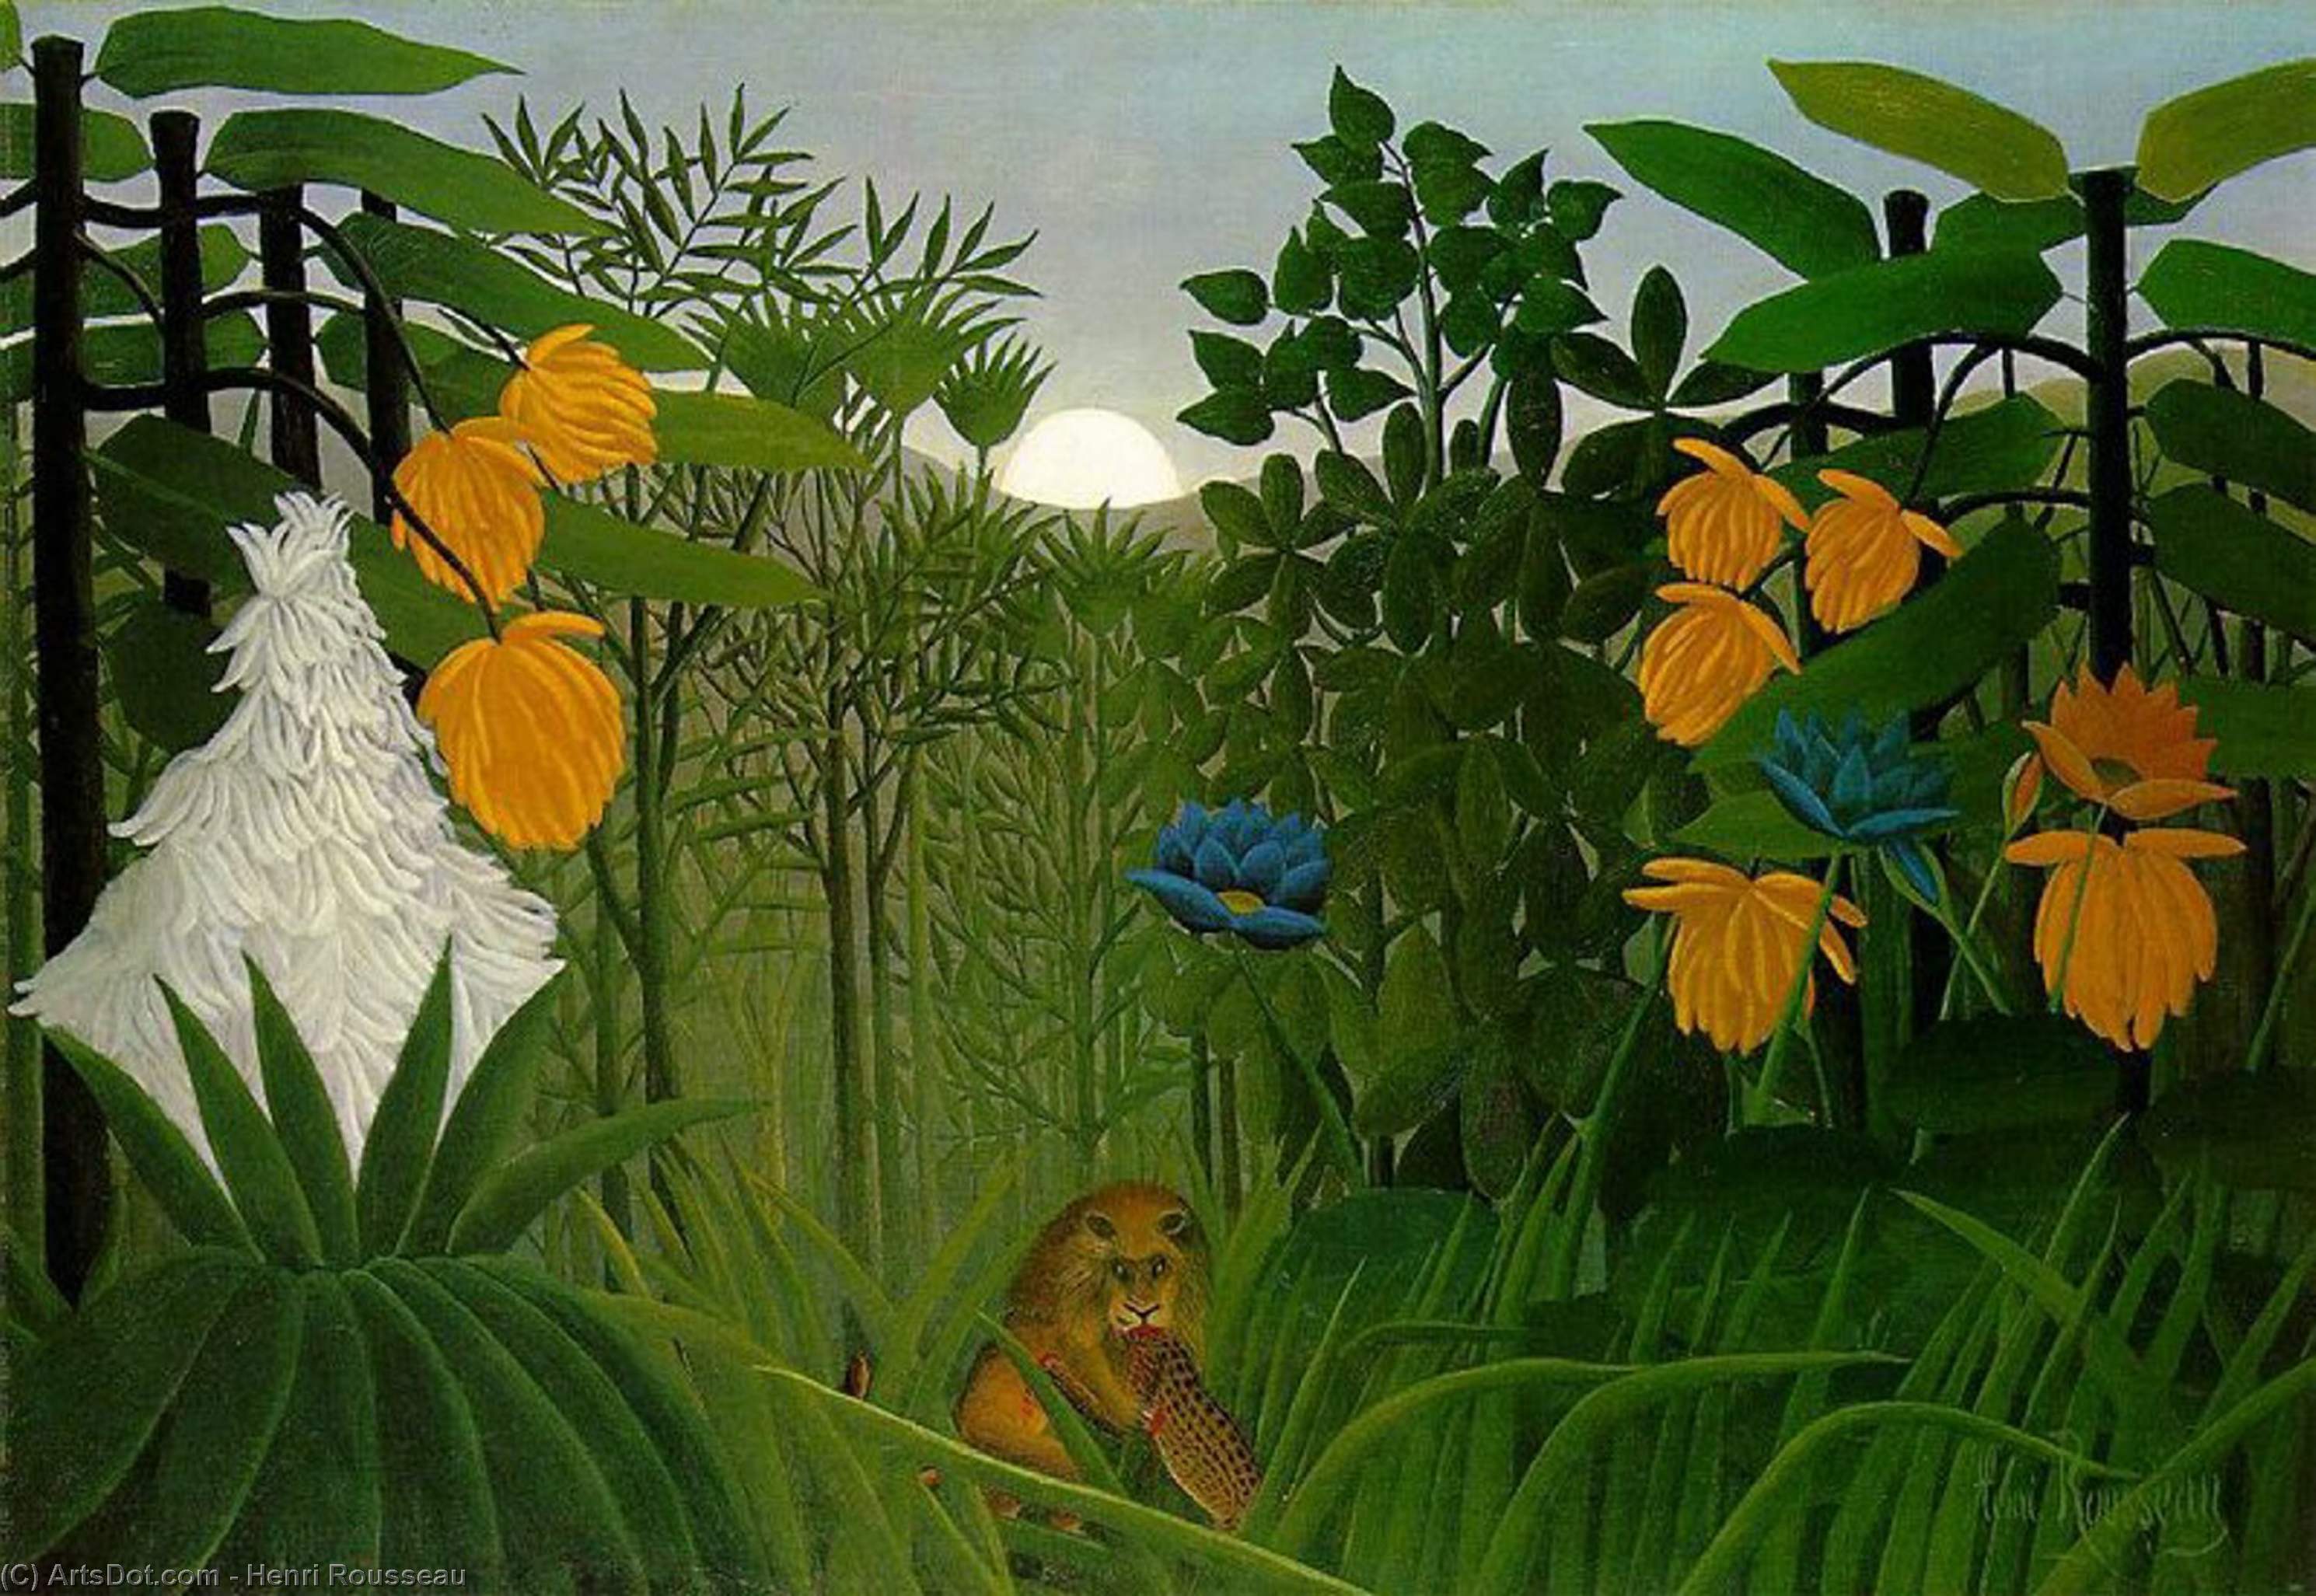 WikiOO.org - Encyclopedia of Fine Arts - Maľba, Artwork Henri Julien Félix Rousseau (Le Douanier) - The repast of the lion, The